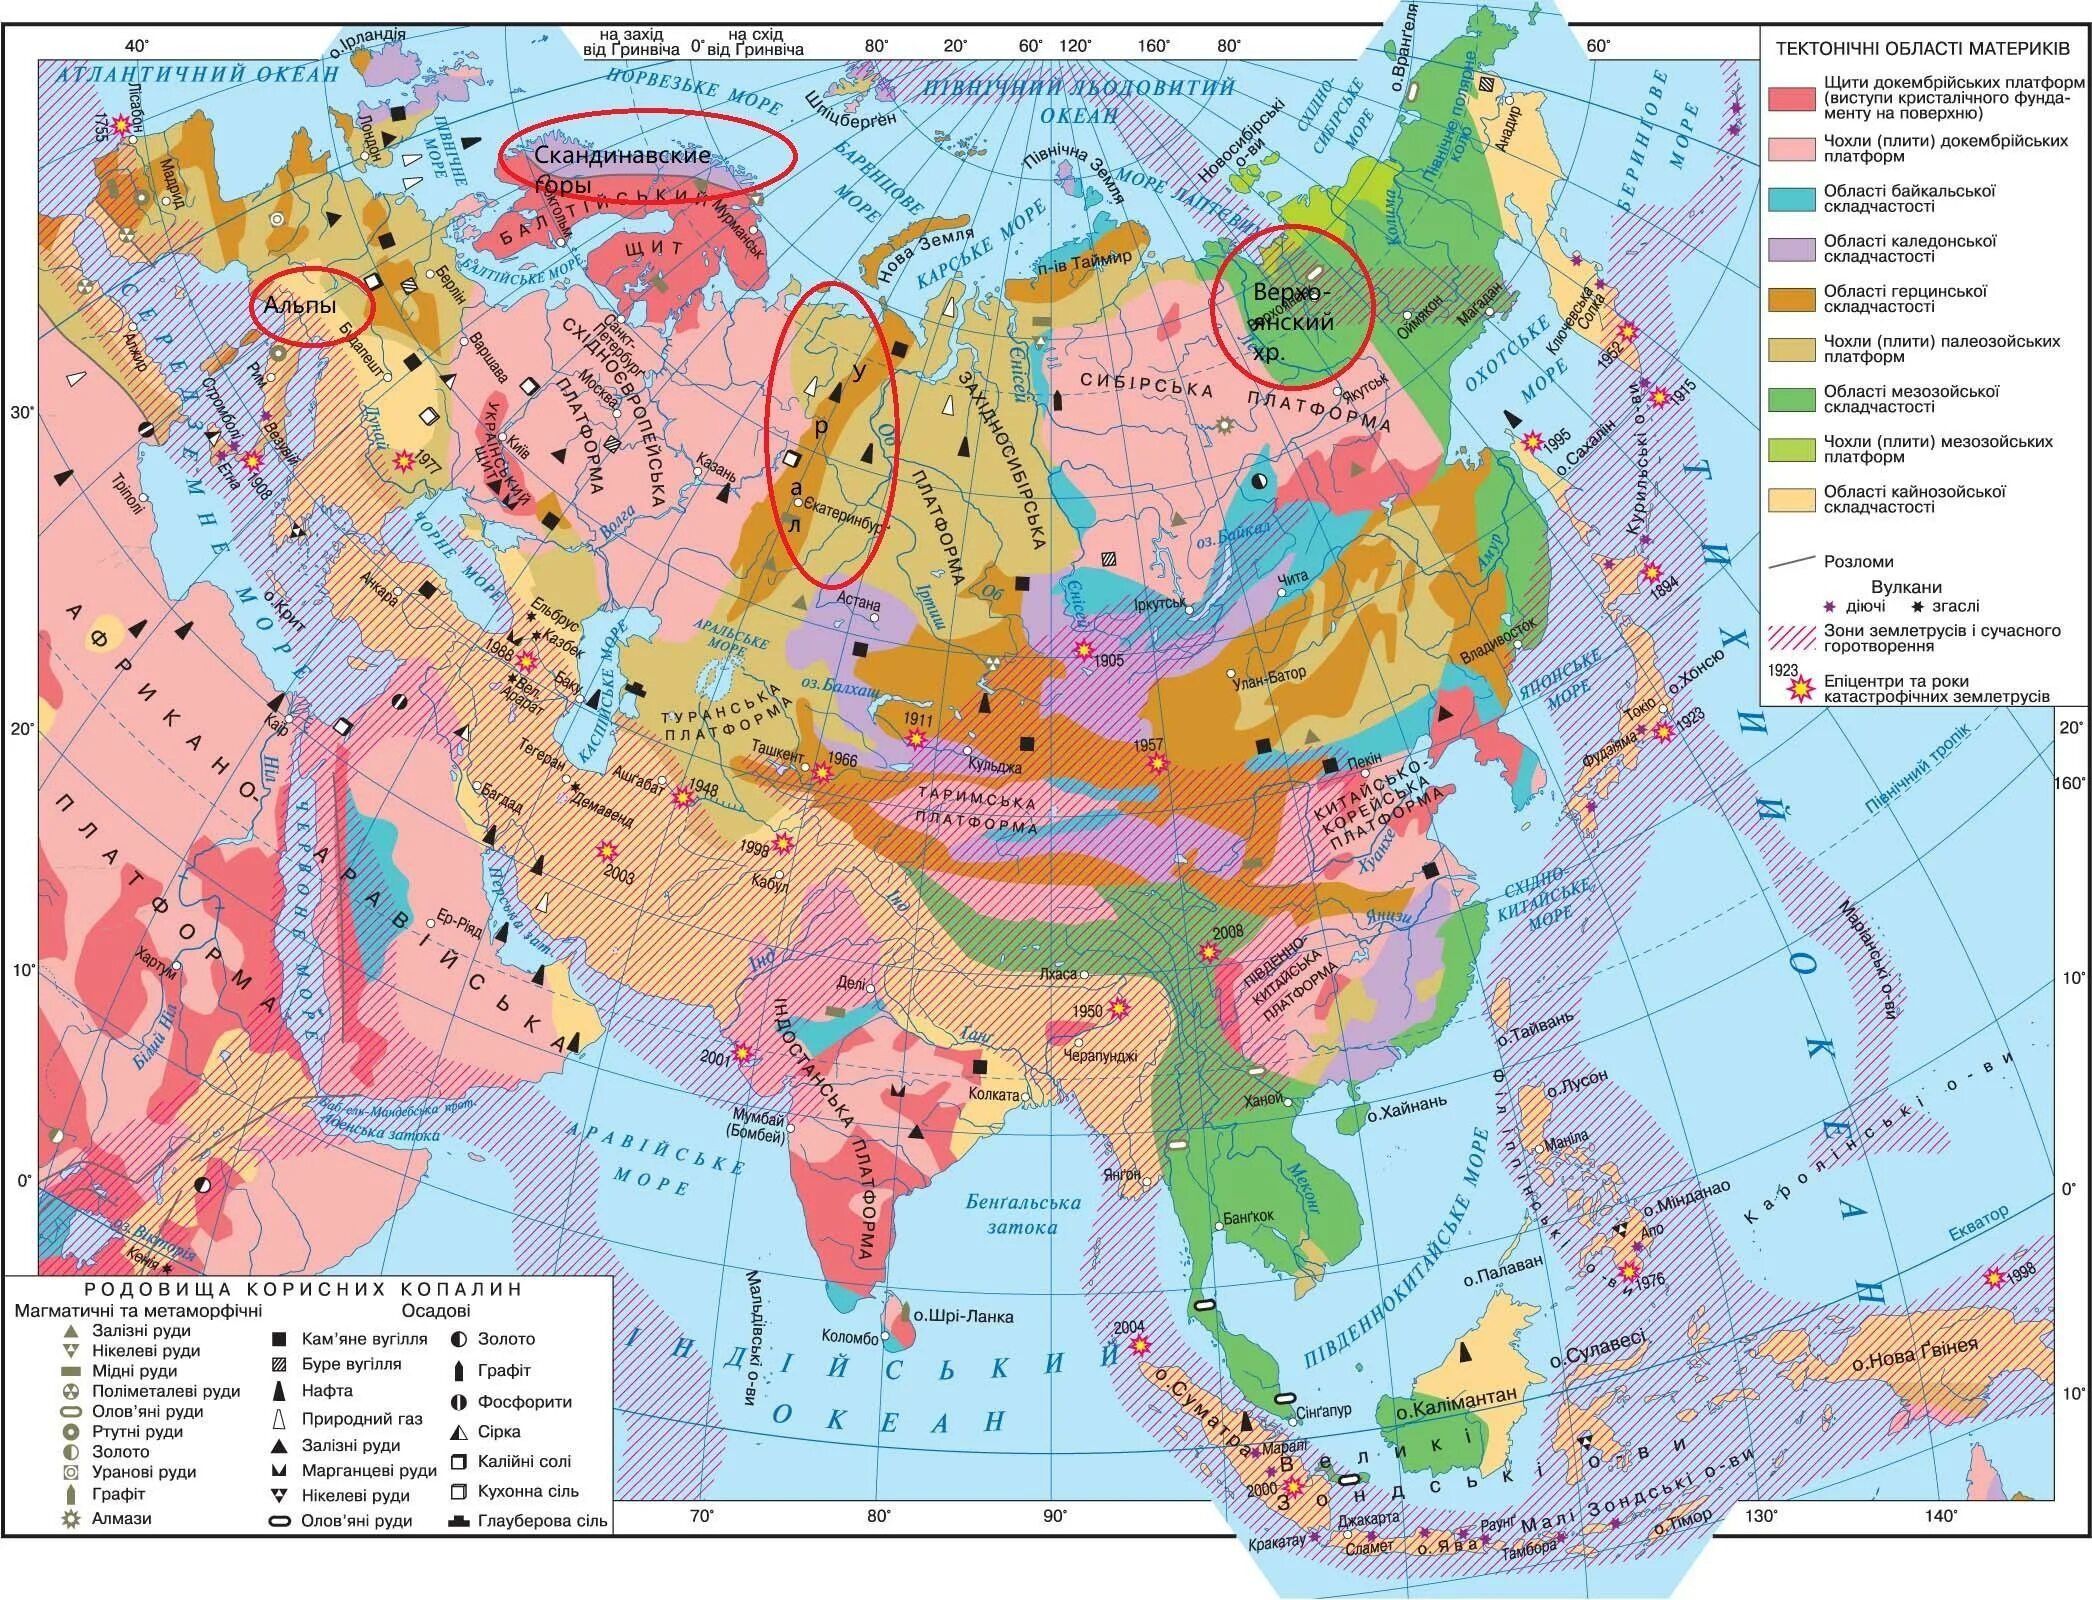 Евразия тектоническая структура форма рельефа. Тектоническое строение Евразии карта. Карта строения земной коры Евразии. Тектоническая карта зарубежной Азии. Карта тектонических структур Евразии.